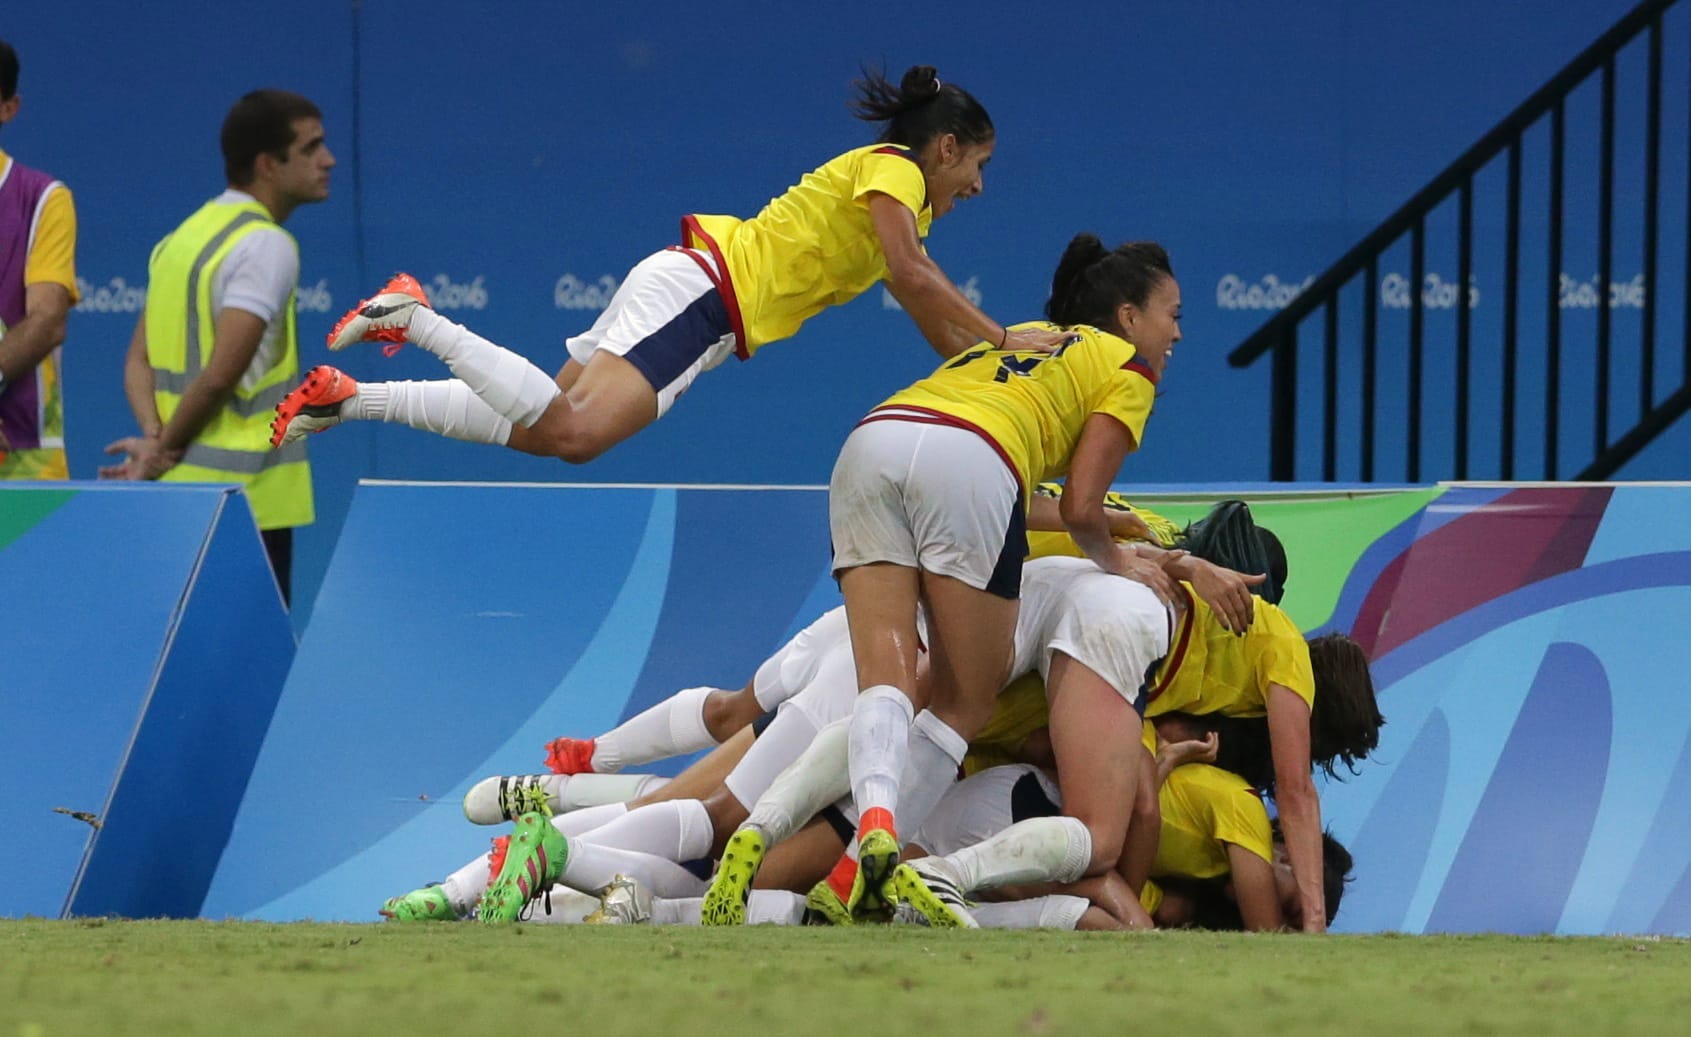 Die kolumbianische Frauenfußball-Mannschaft feiert den Last-Minute-Ausgleich gegen die USA.